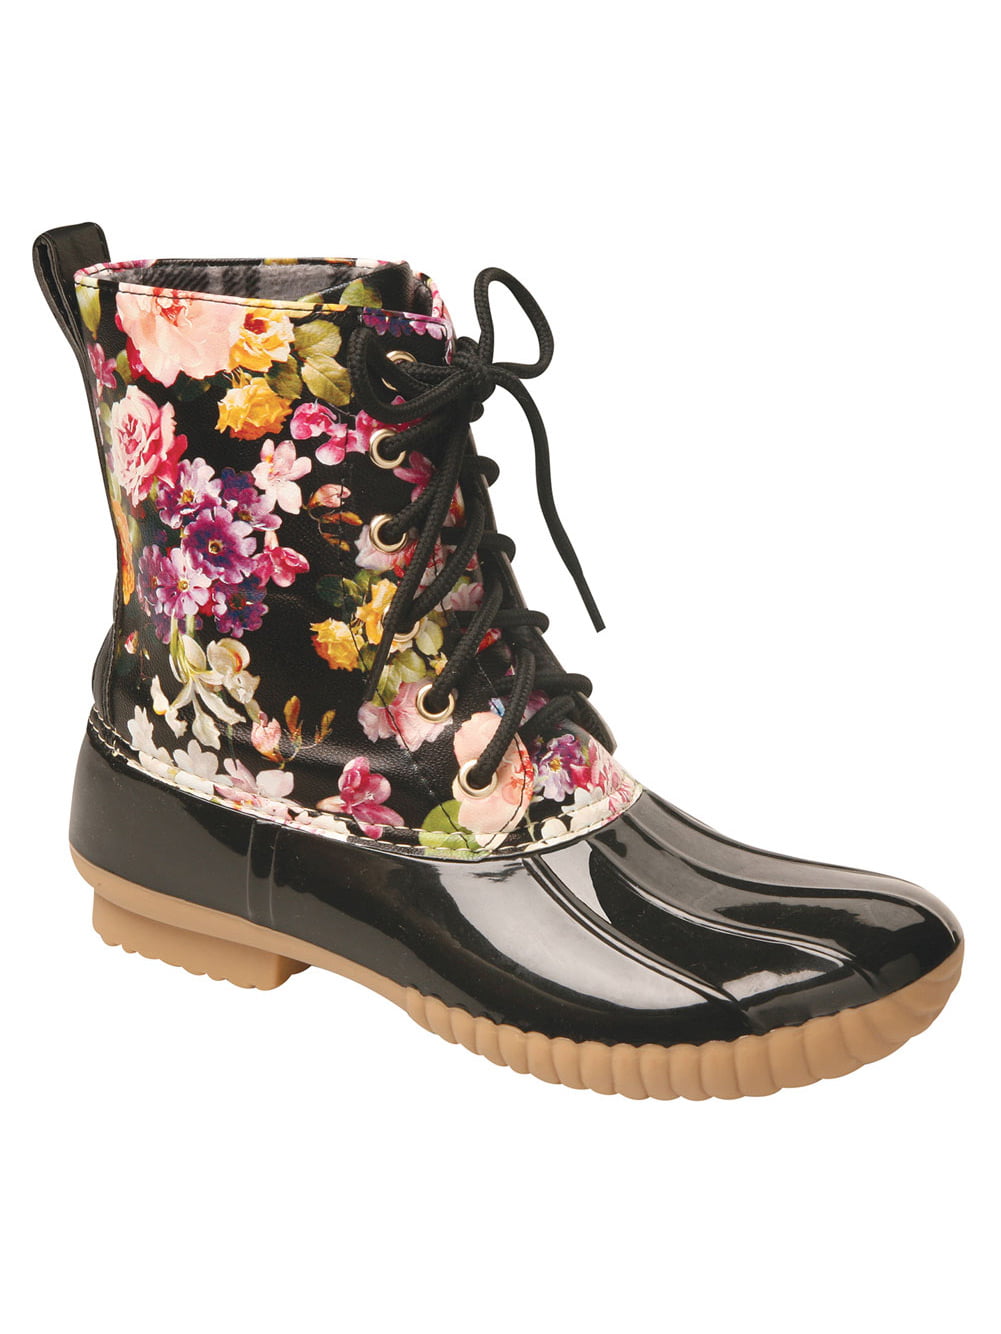 Buy > duck rain boots for women > in stock